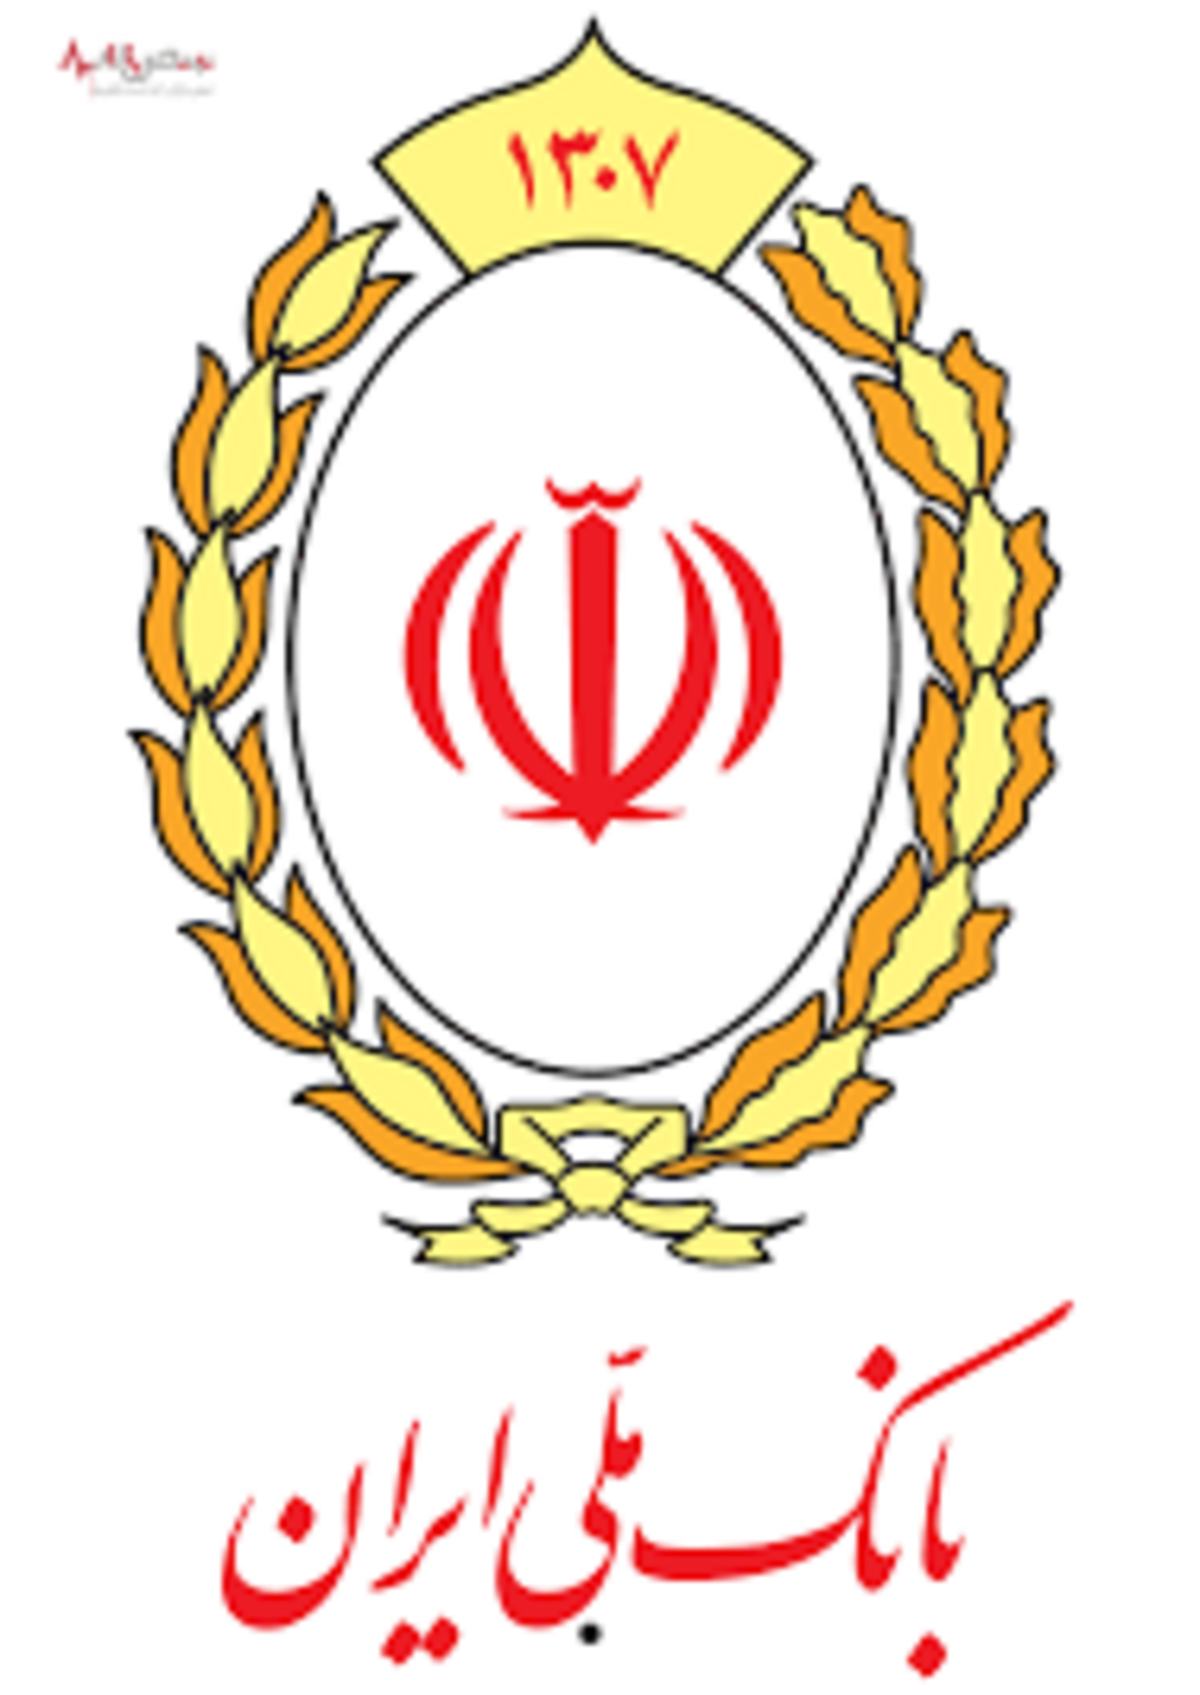 عبور تسهیلات کرونایی پرداختی بانک ملی ایران از مرز ۱۲۶.۵ هزار میلیارد ریال